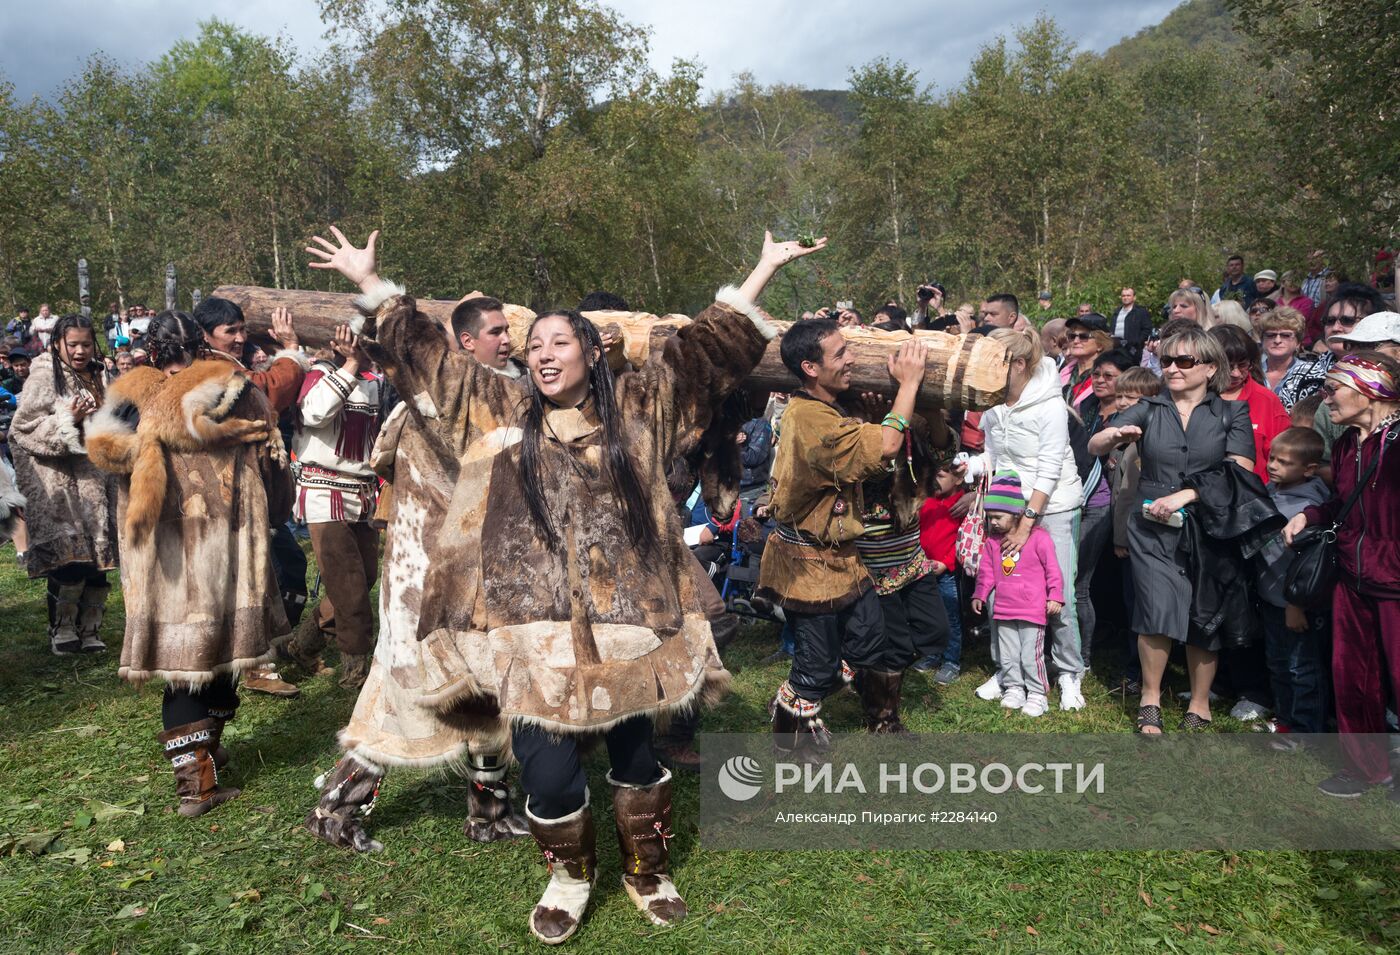 Обрядовый праздник "Алхалалалай" на Камчатке